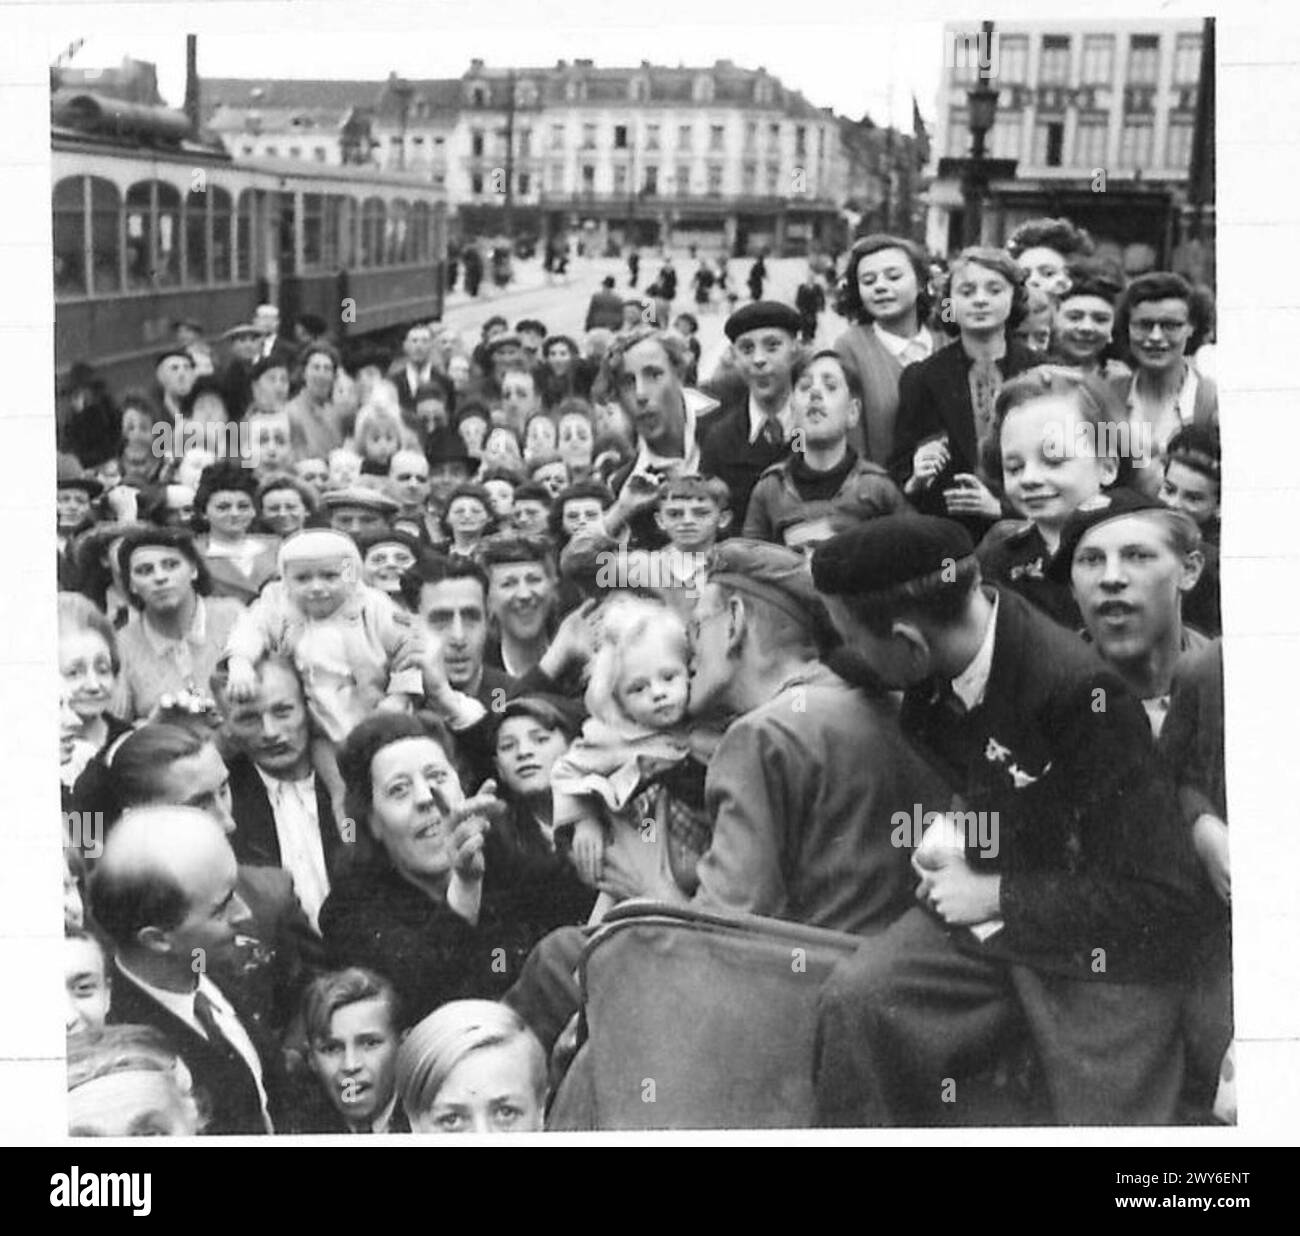 FRANZÖSISCHE UND BELGISCHE STÄDTE und DÖRFER BEFREIT - Ein britischer Soldat, umgeben von Mädchen, erhält einen Kuss in der Stadt Roubaix. Britische Armee, 21. Armeegruppe Stockfoto